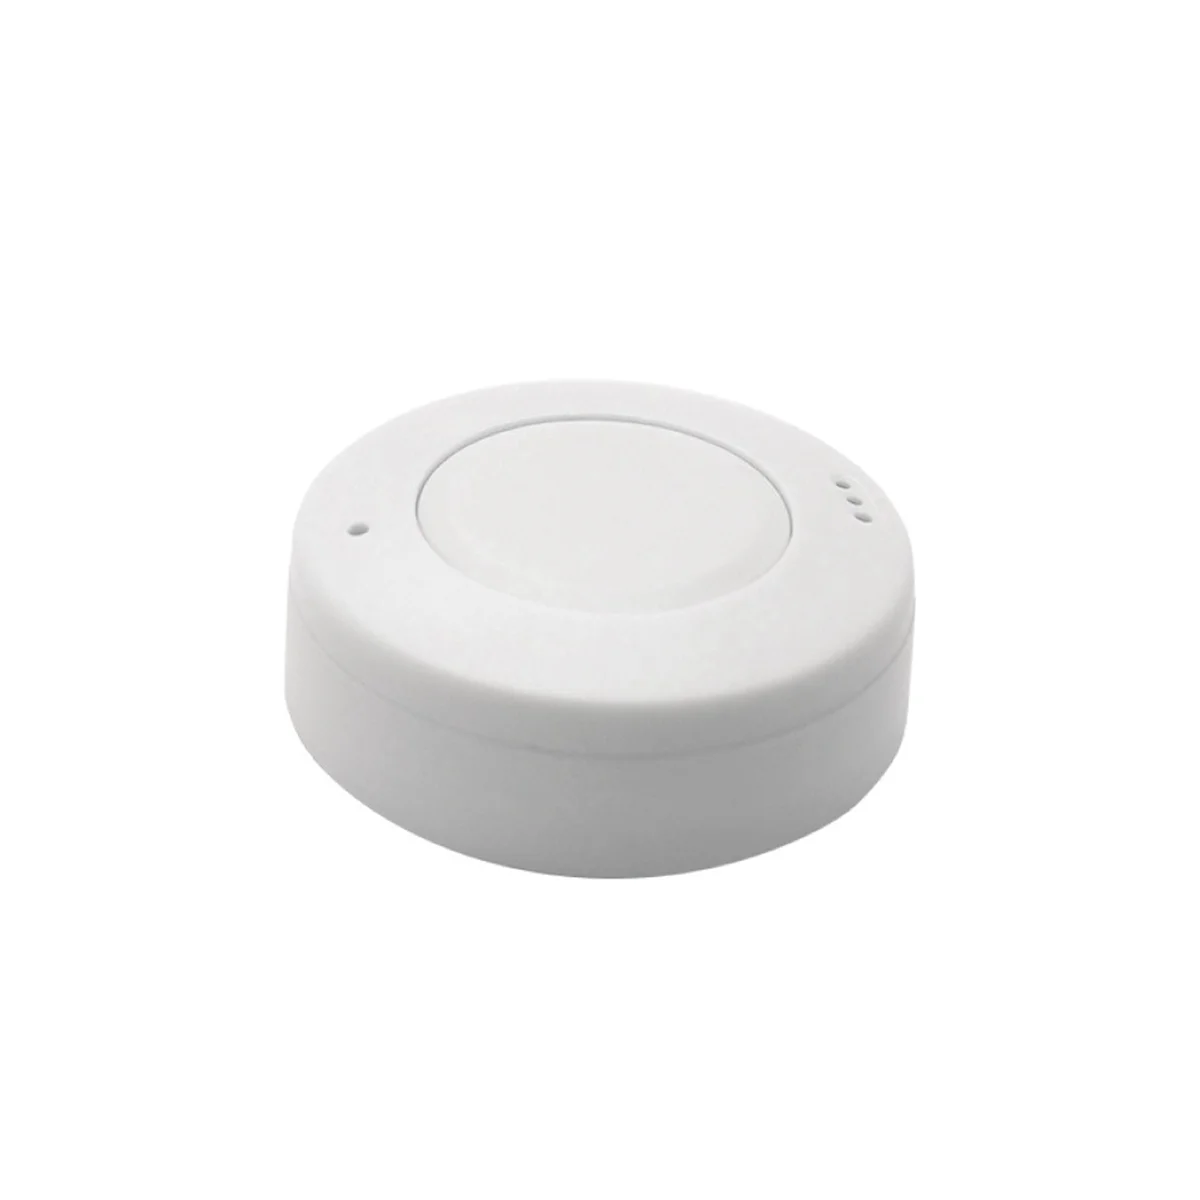 NRF52810 Модуль Bluetooth 5.0 с низким энергопотреблением, маяк для позиционирования в помещении, белый 31,5 X 31,5 X 10 мм